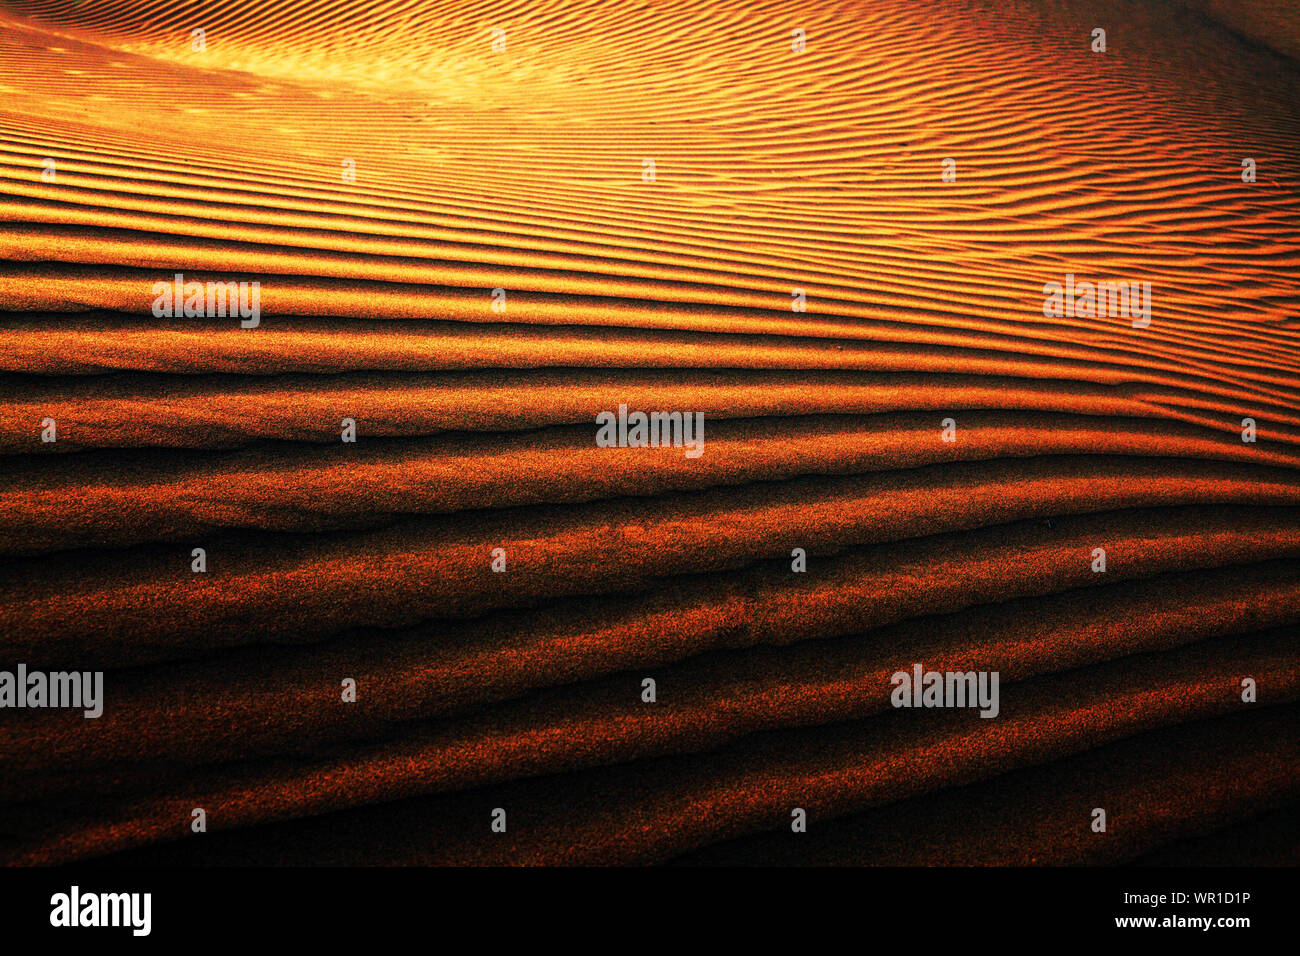 Full Frame Shot Of Sand At Thar Desert Stock Photo